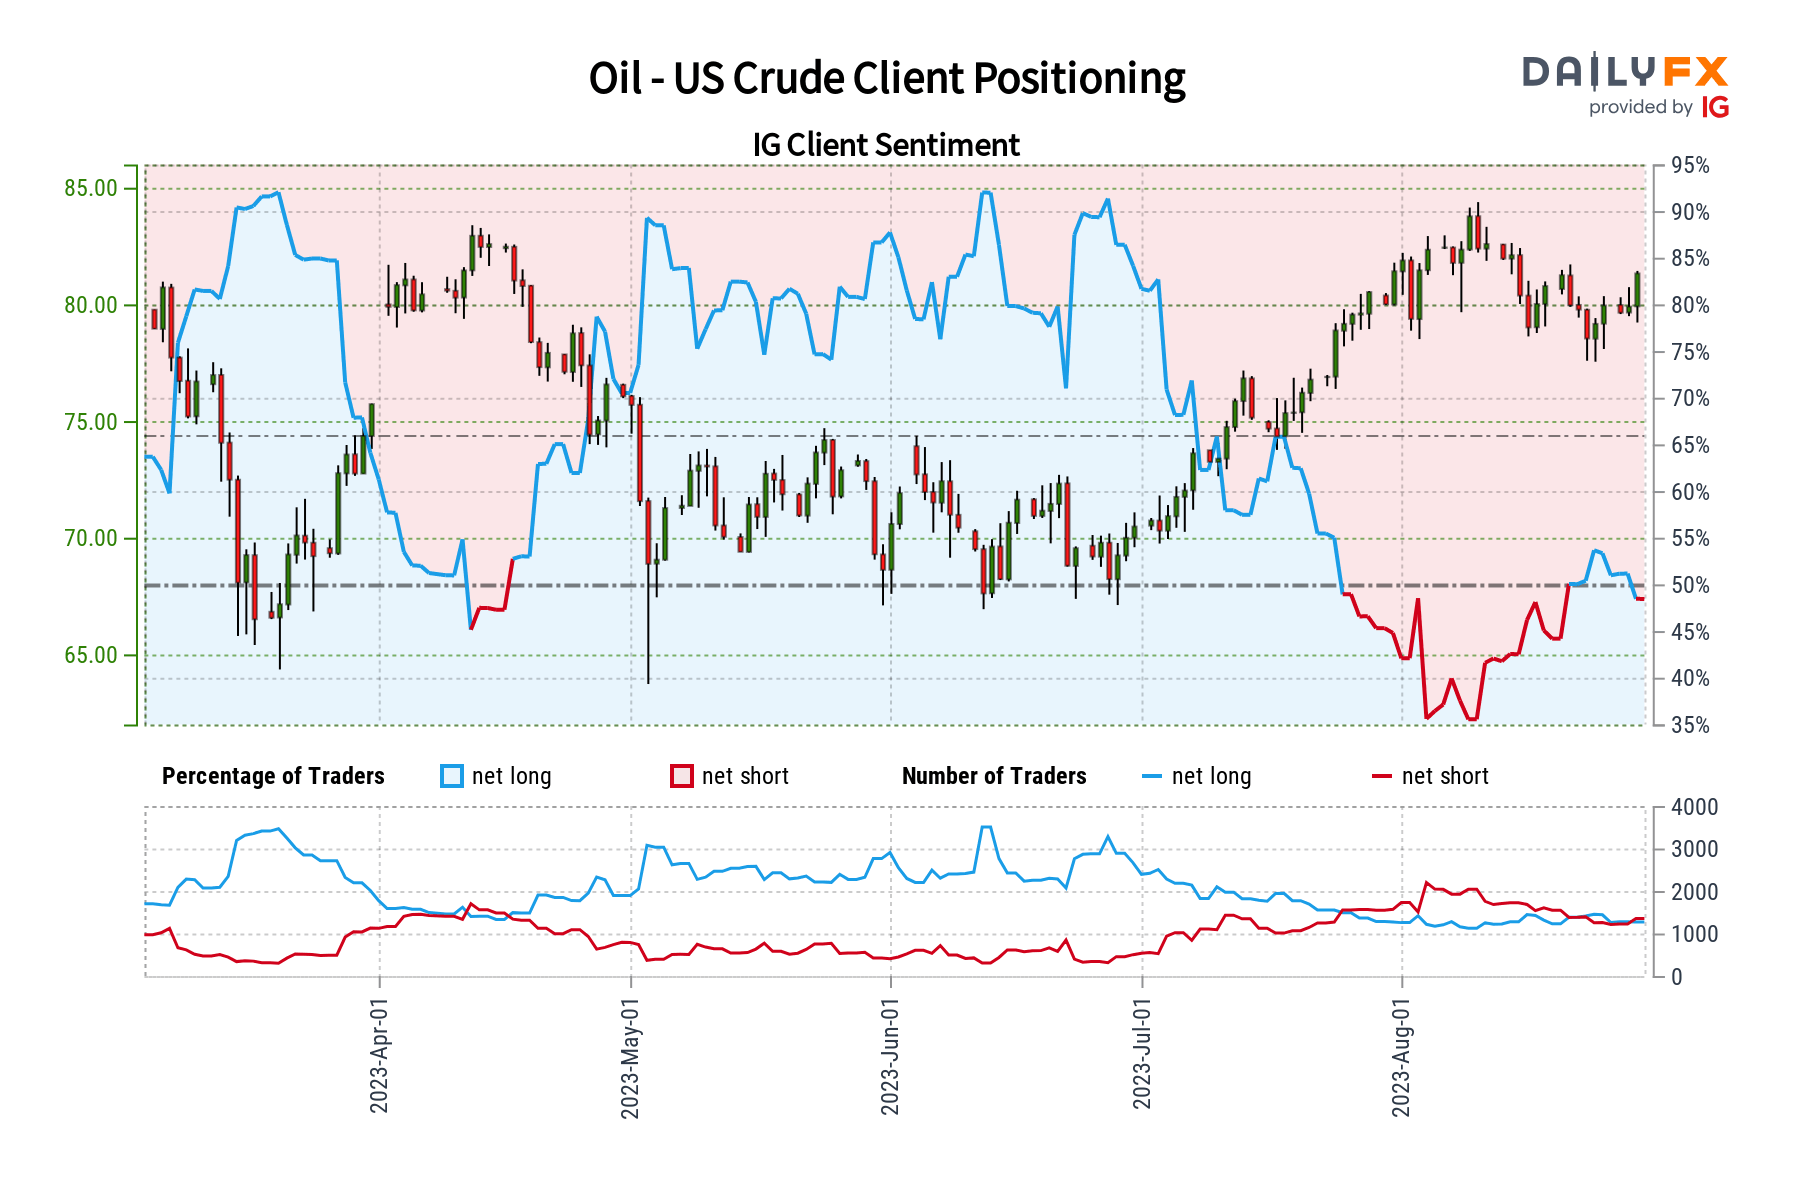 Crude Oil Sentiment Outlook - Bullish